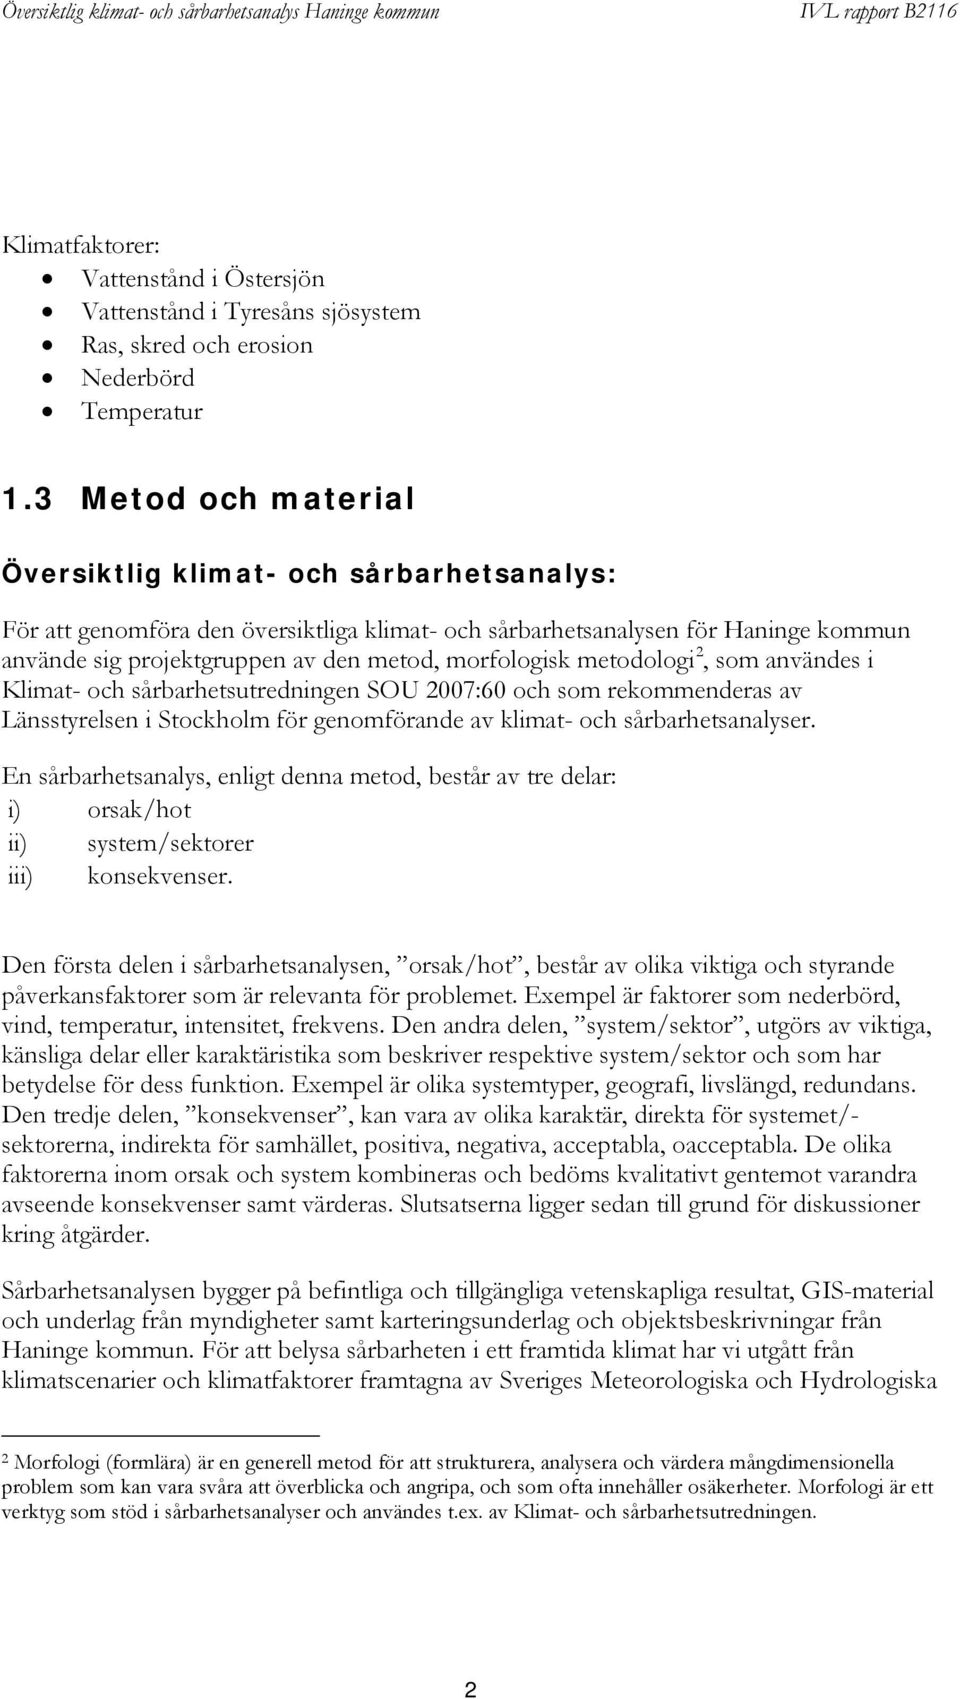 morfologisk metodologi 2, som användes i Klimat- och sårbarhetsutredningen SOU 2007:60 och som rekommenderas av Länsstyrelsen i Stockholm för genomförande av klimat- och sårbarhetsanalyser.